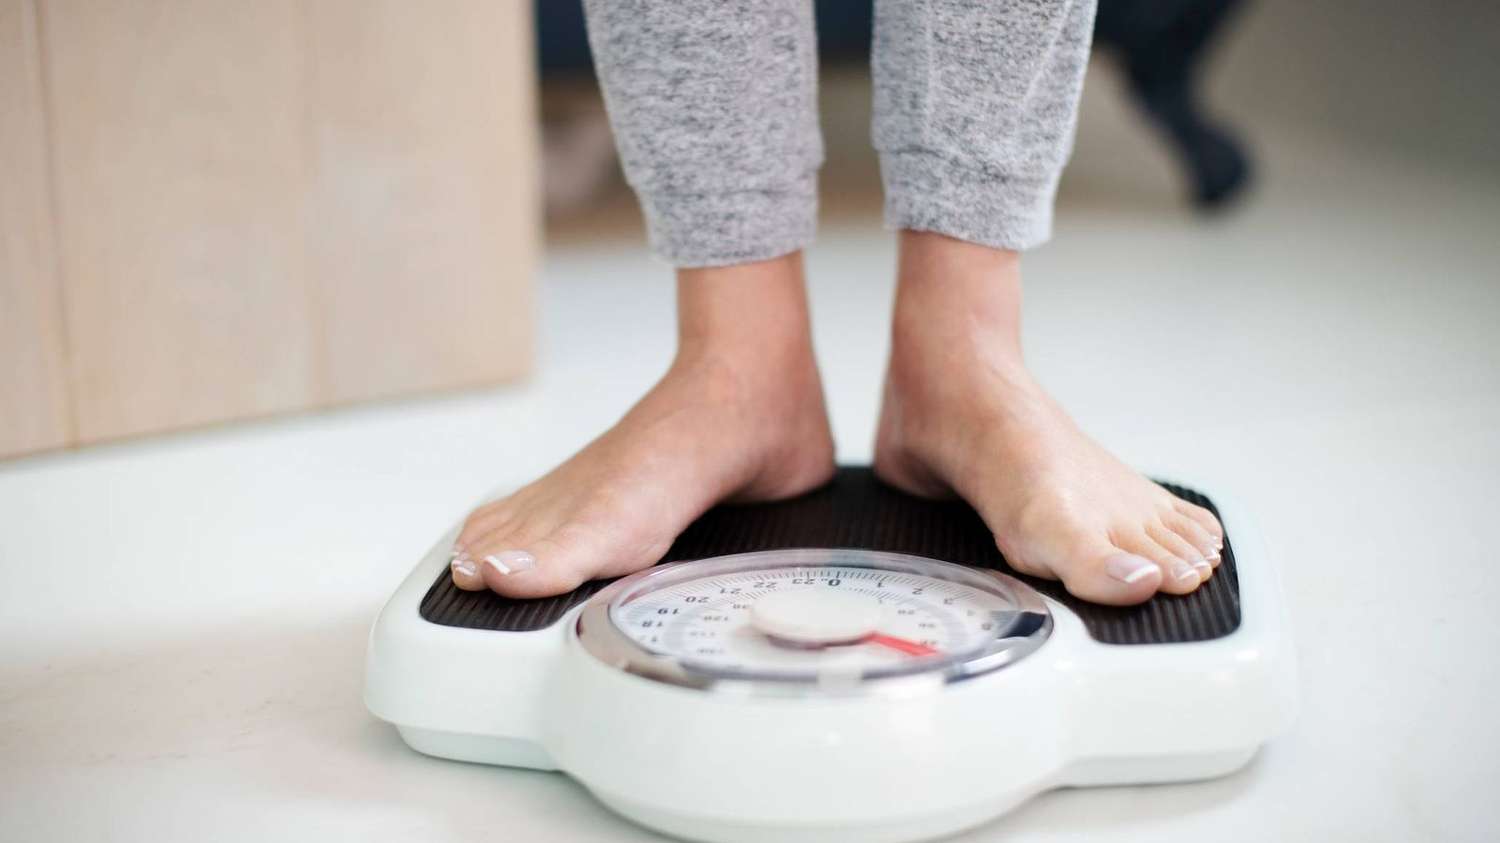 9 estrategias para perder peso y adelgazar de acuerdo a los expertos en nutrición